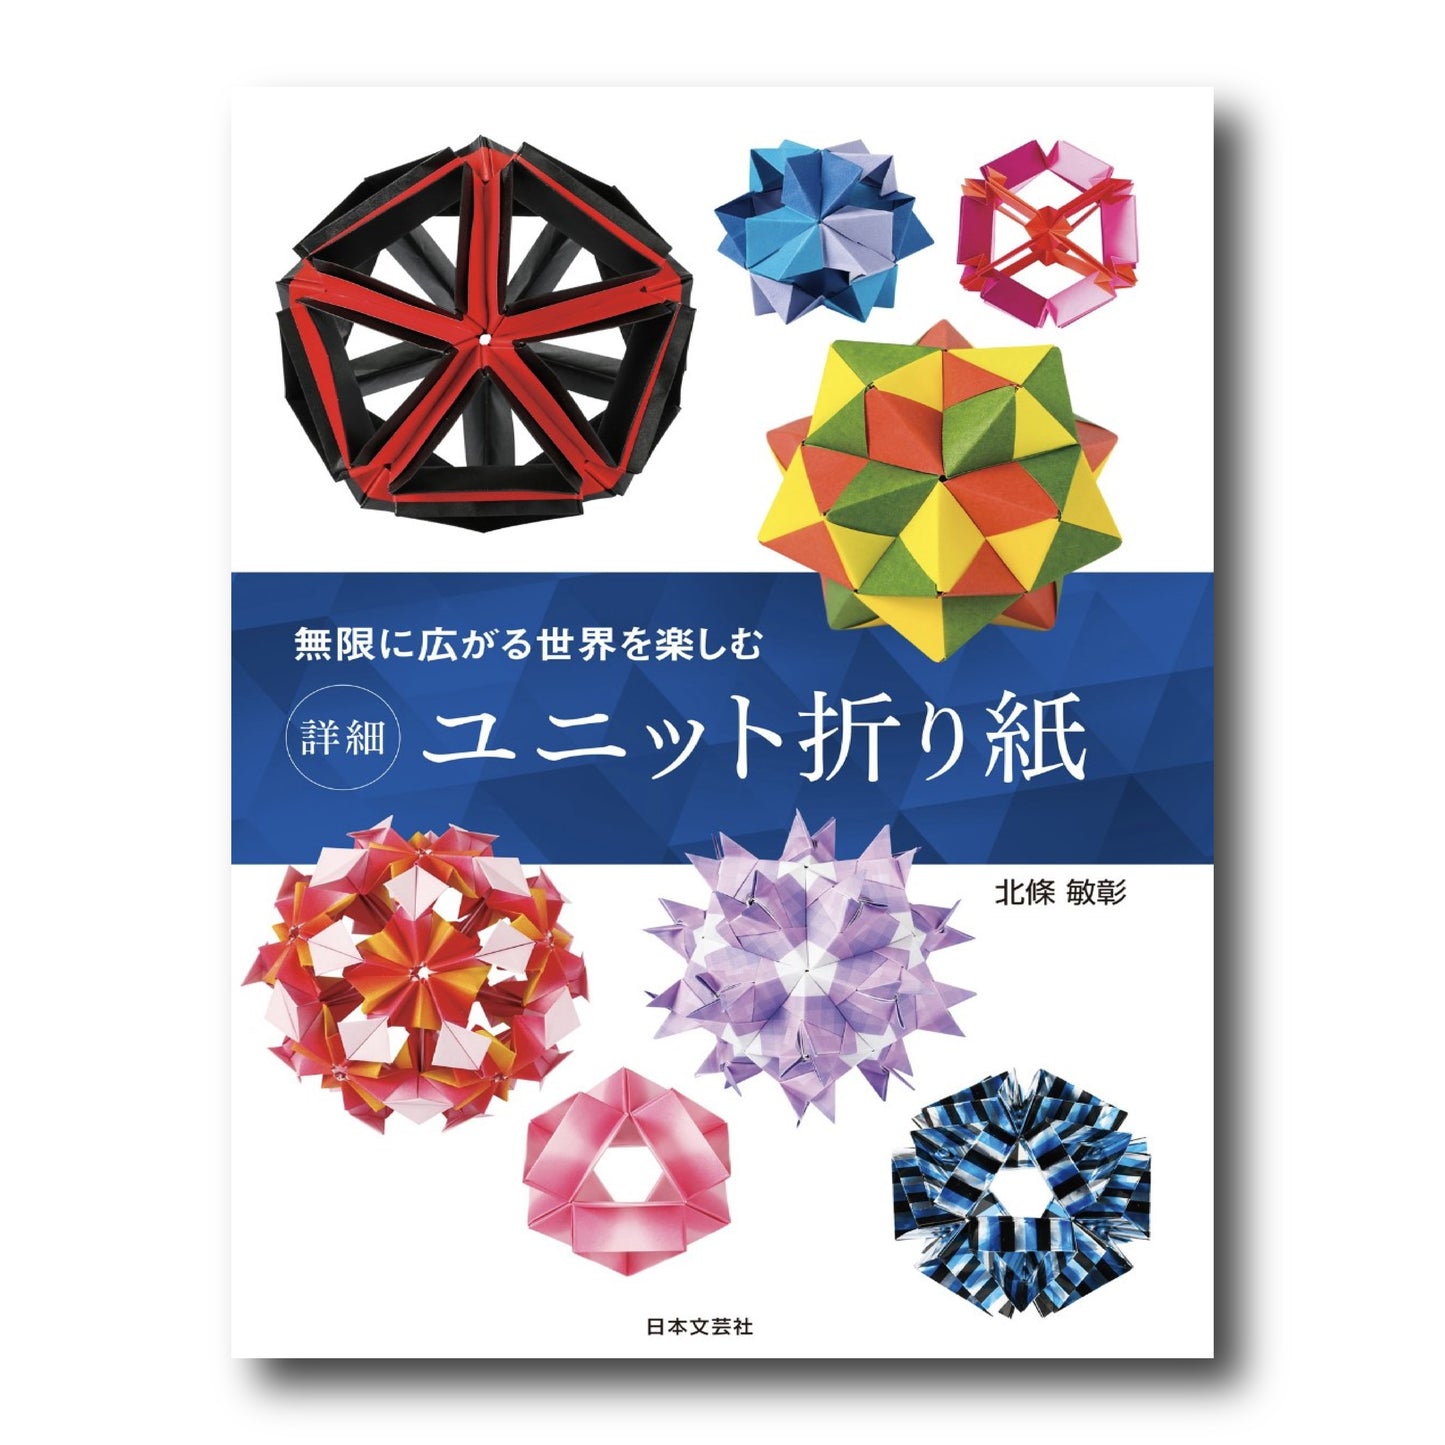 Unit Origami 無限に広がる世界を楽しむ 詳細 ユニット折り紙